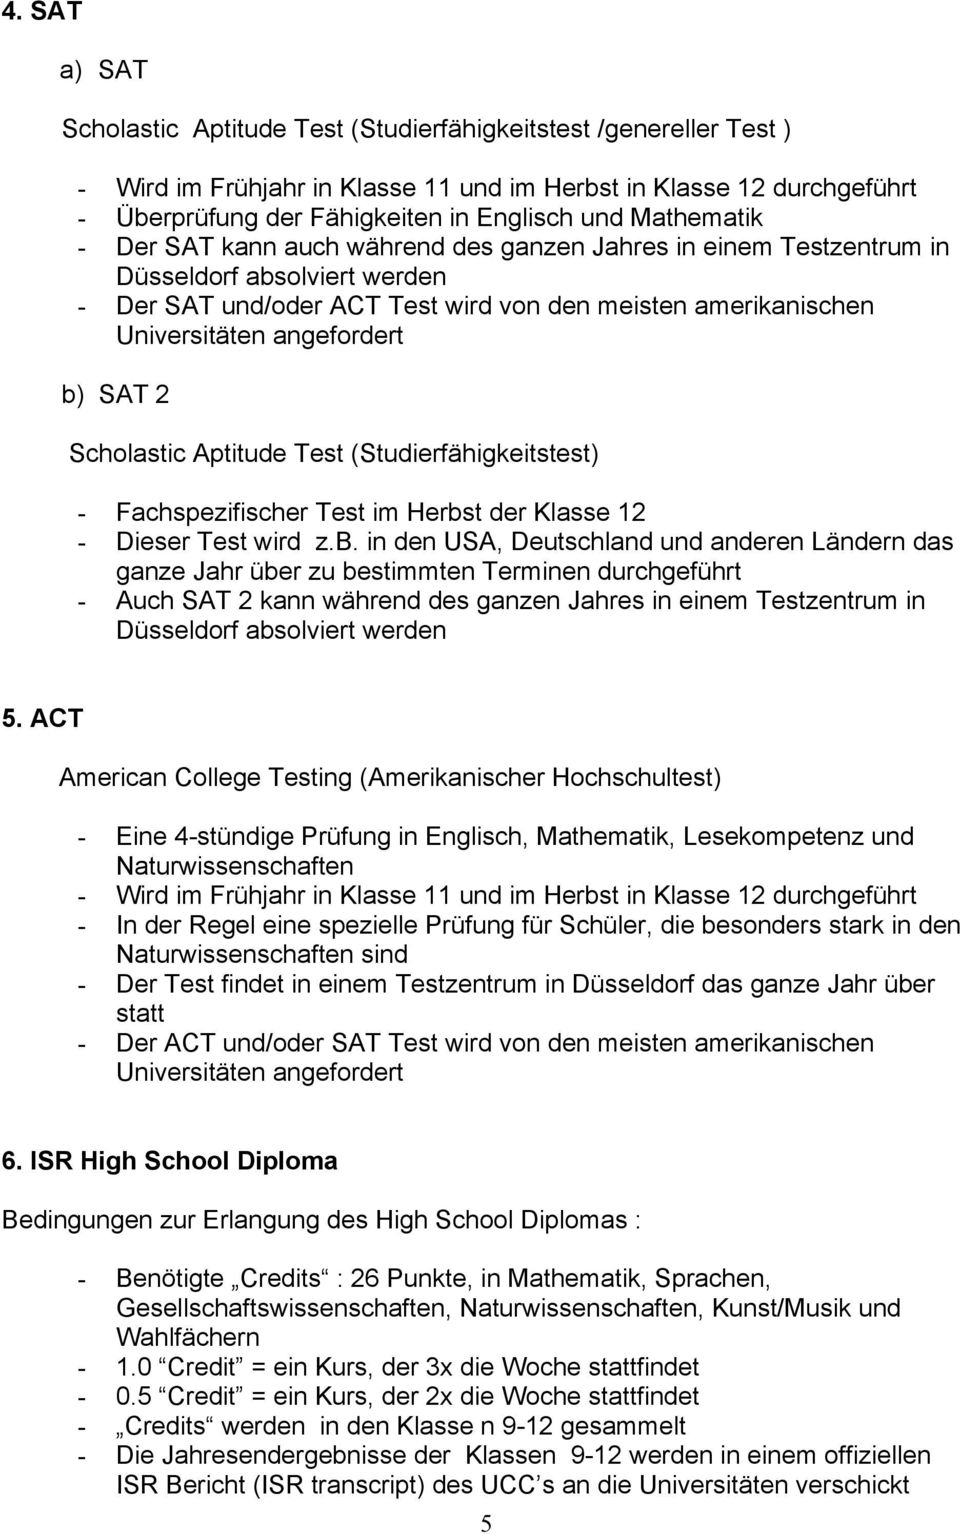 b) SAT 2 Scholastic Aptitude Test (Studierfähigkeitstest) - Fachspezifischer Test im Herbst der Klasse 12 - Dieser Test wird z.b. in den USA, Deutschland und anderen Ländern das ganze Jahr über zu